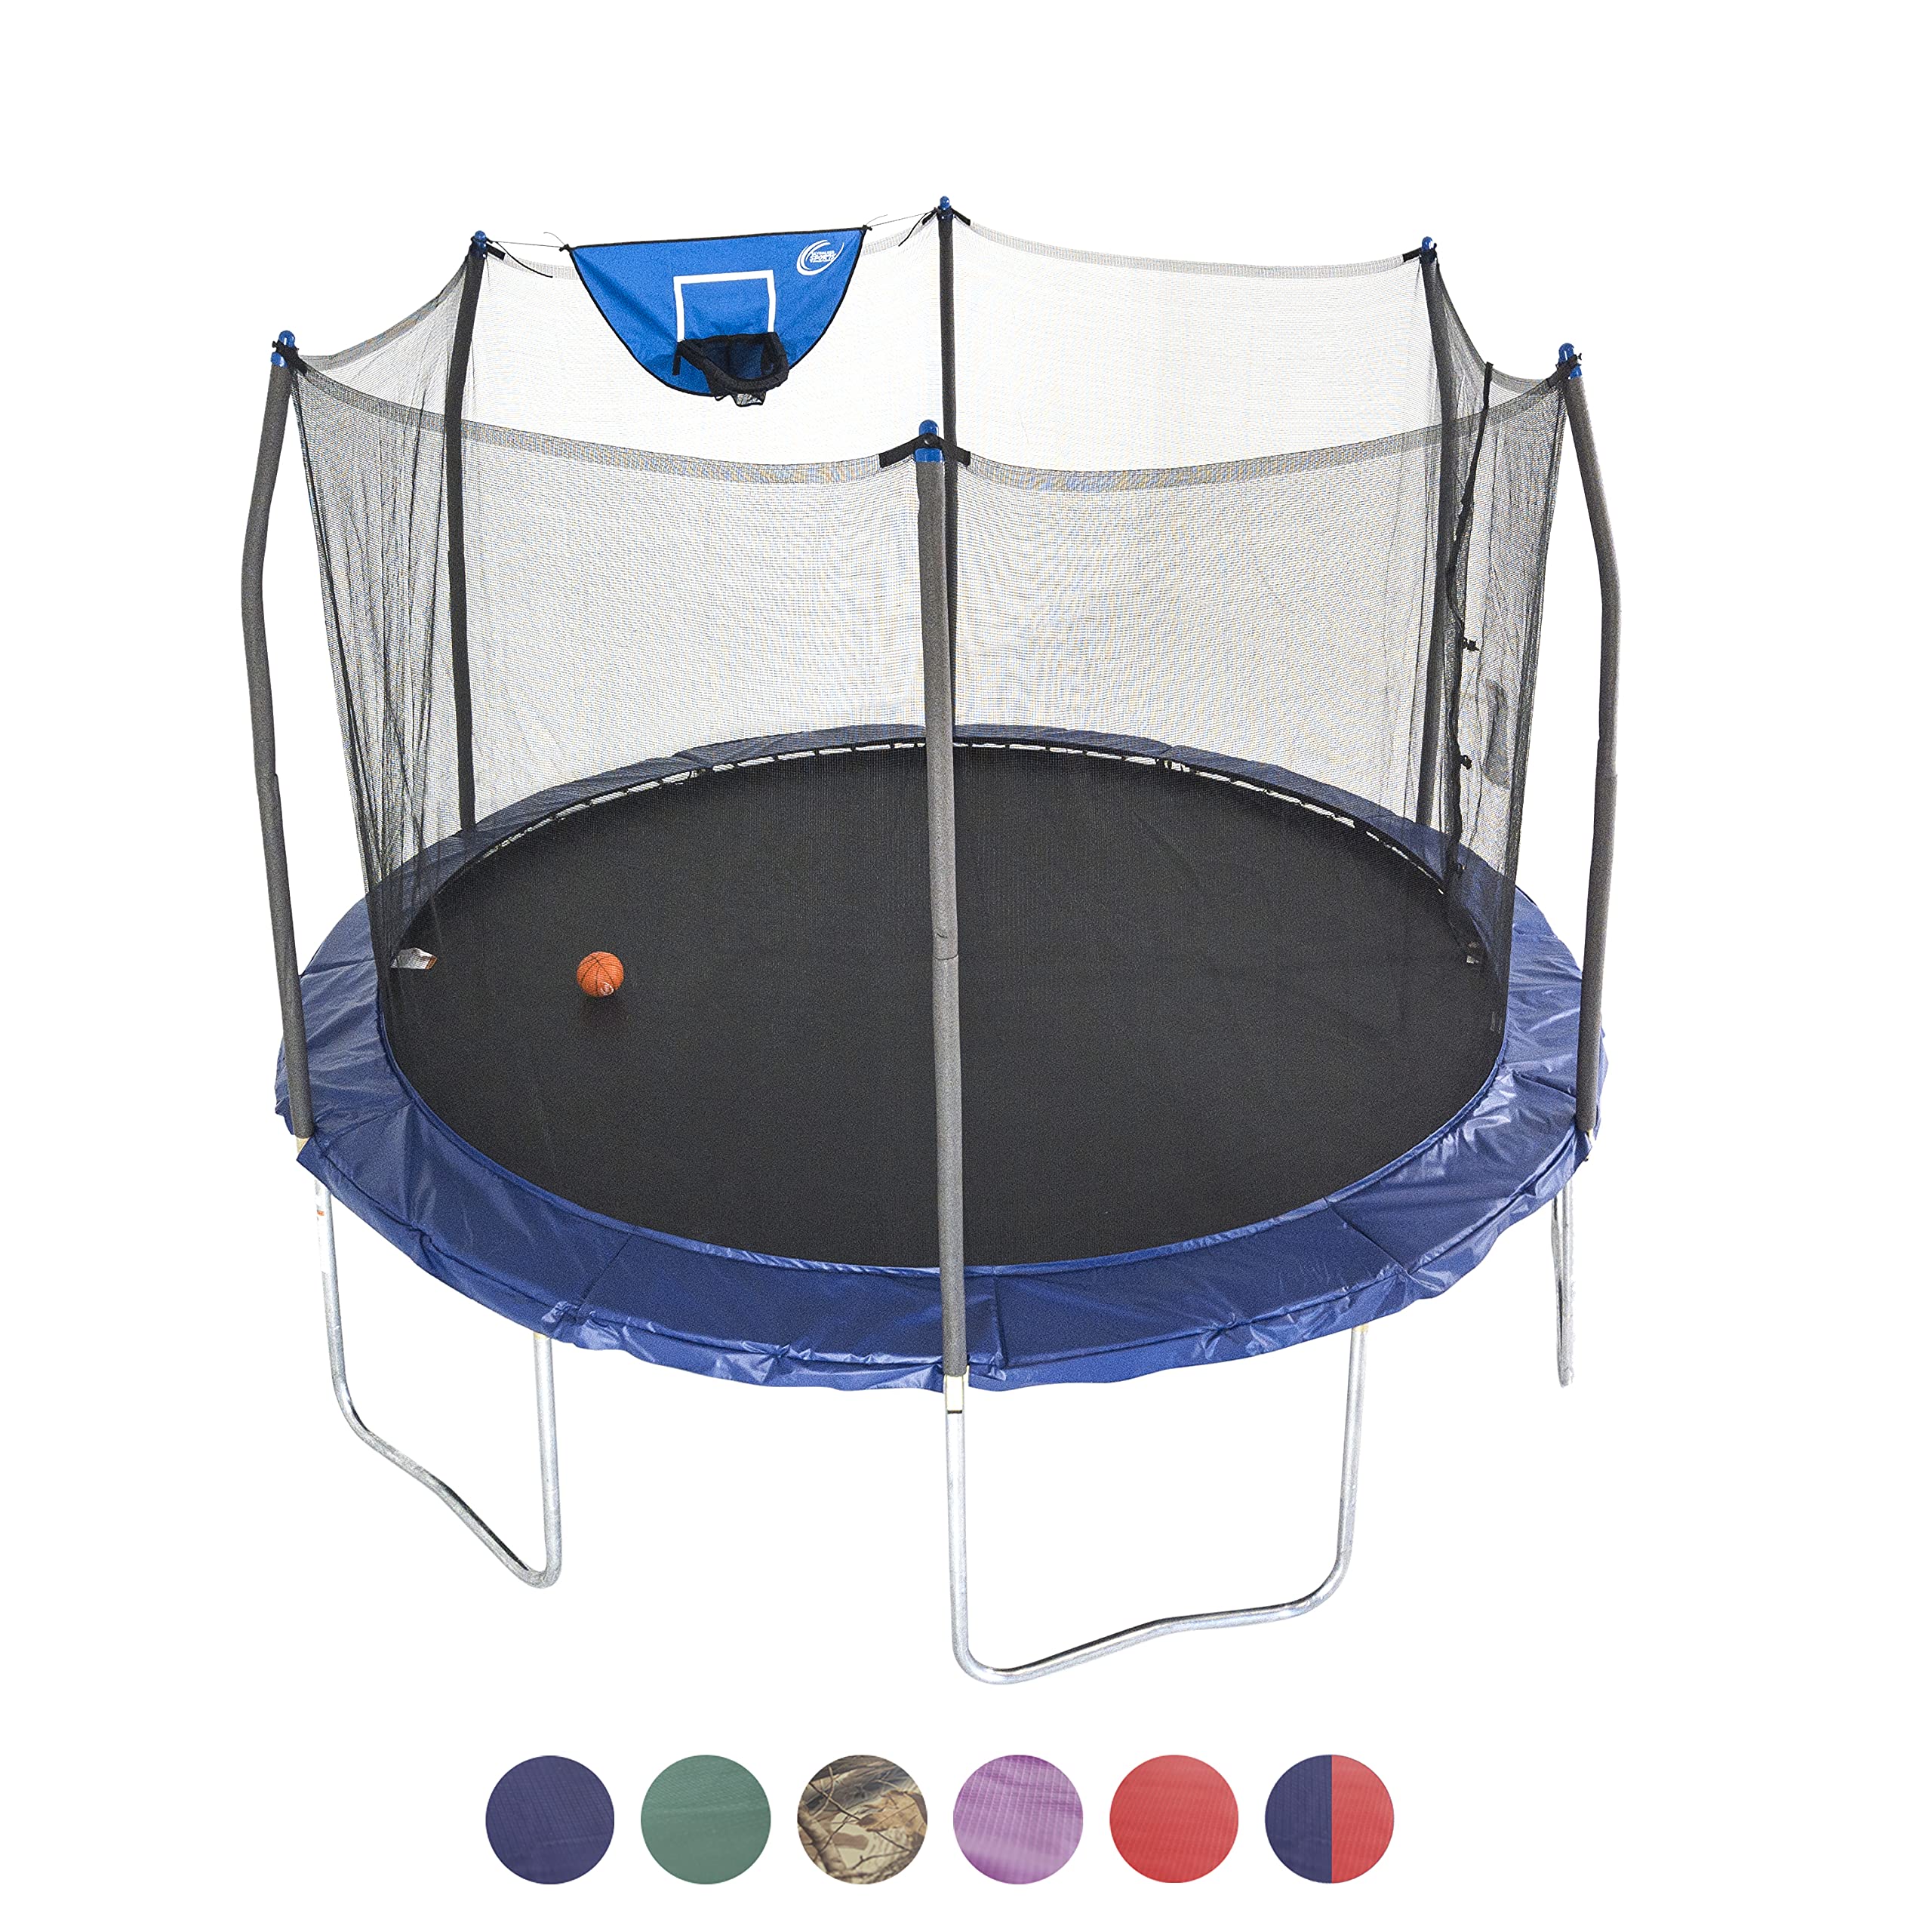 Skywalker Trampolines Jump N’ Dunk Trampoline with Enclosure Net (8FT, 12FT, 15FT) - Basketball Trampoline